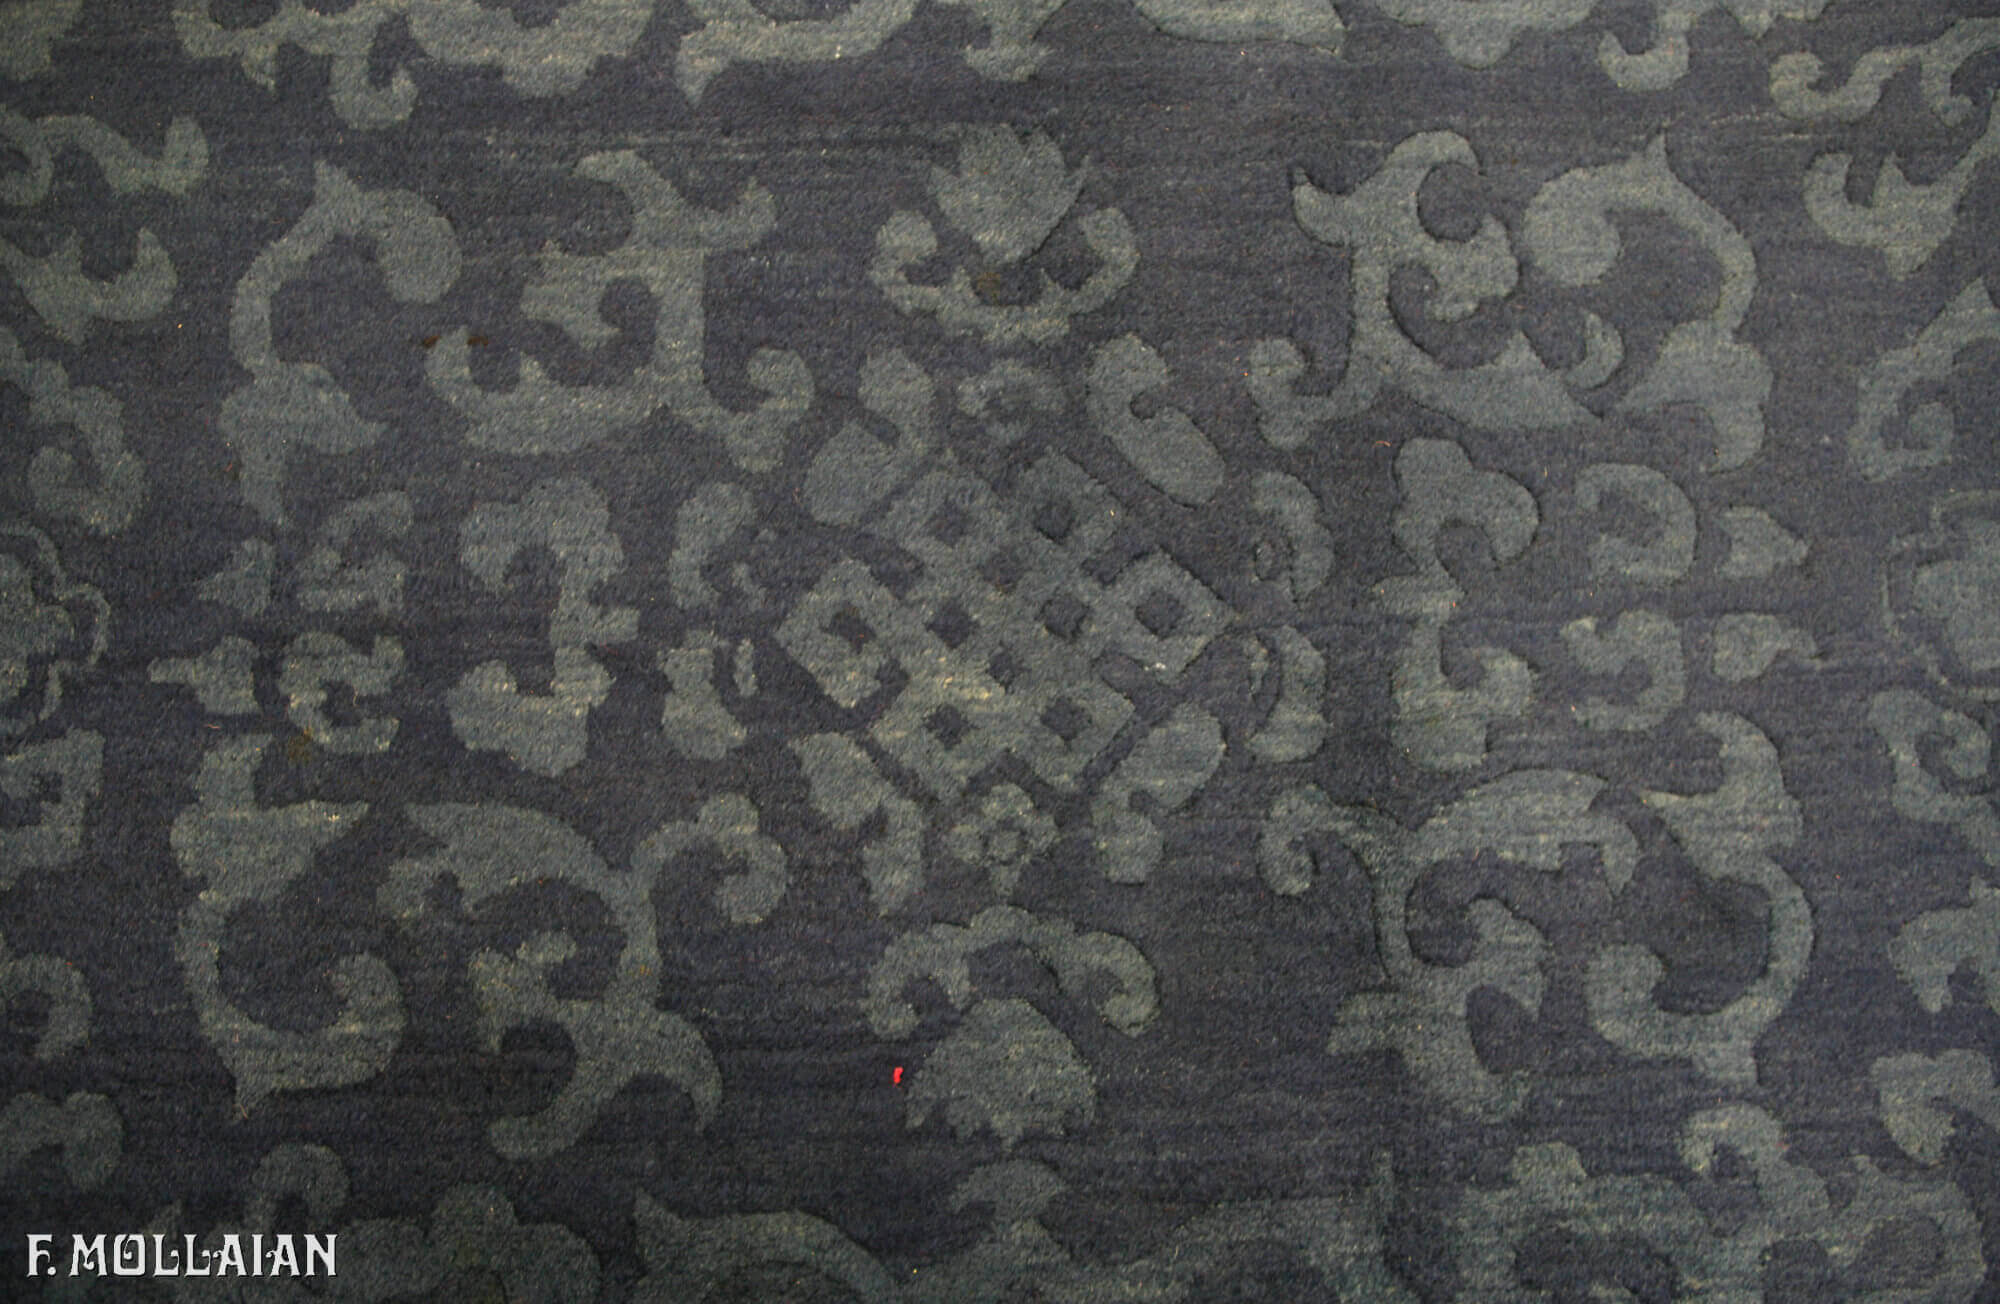 Teppich Chinesischer Antiker Peking n°:46389144